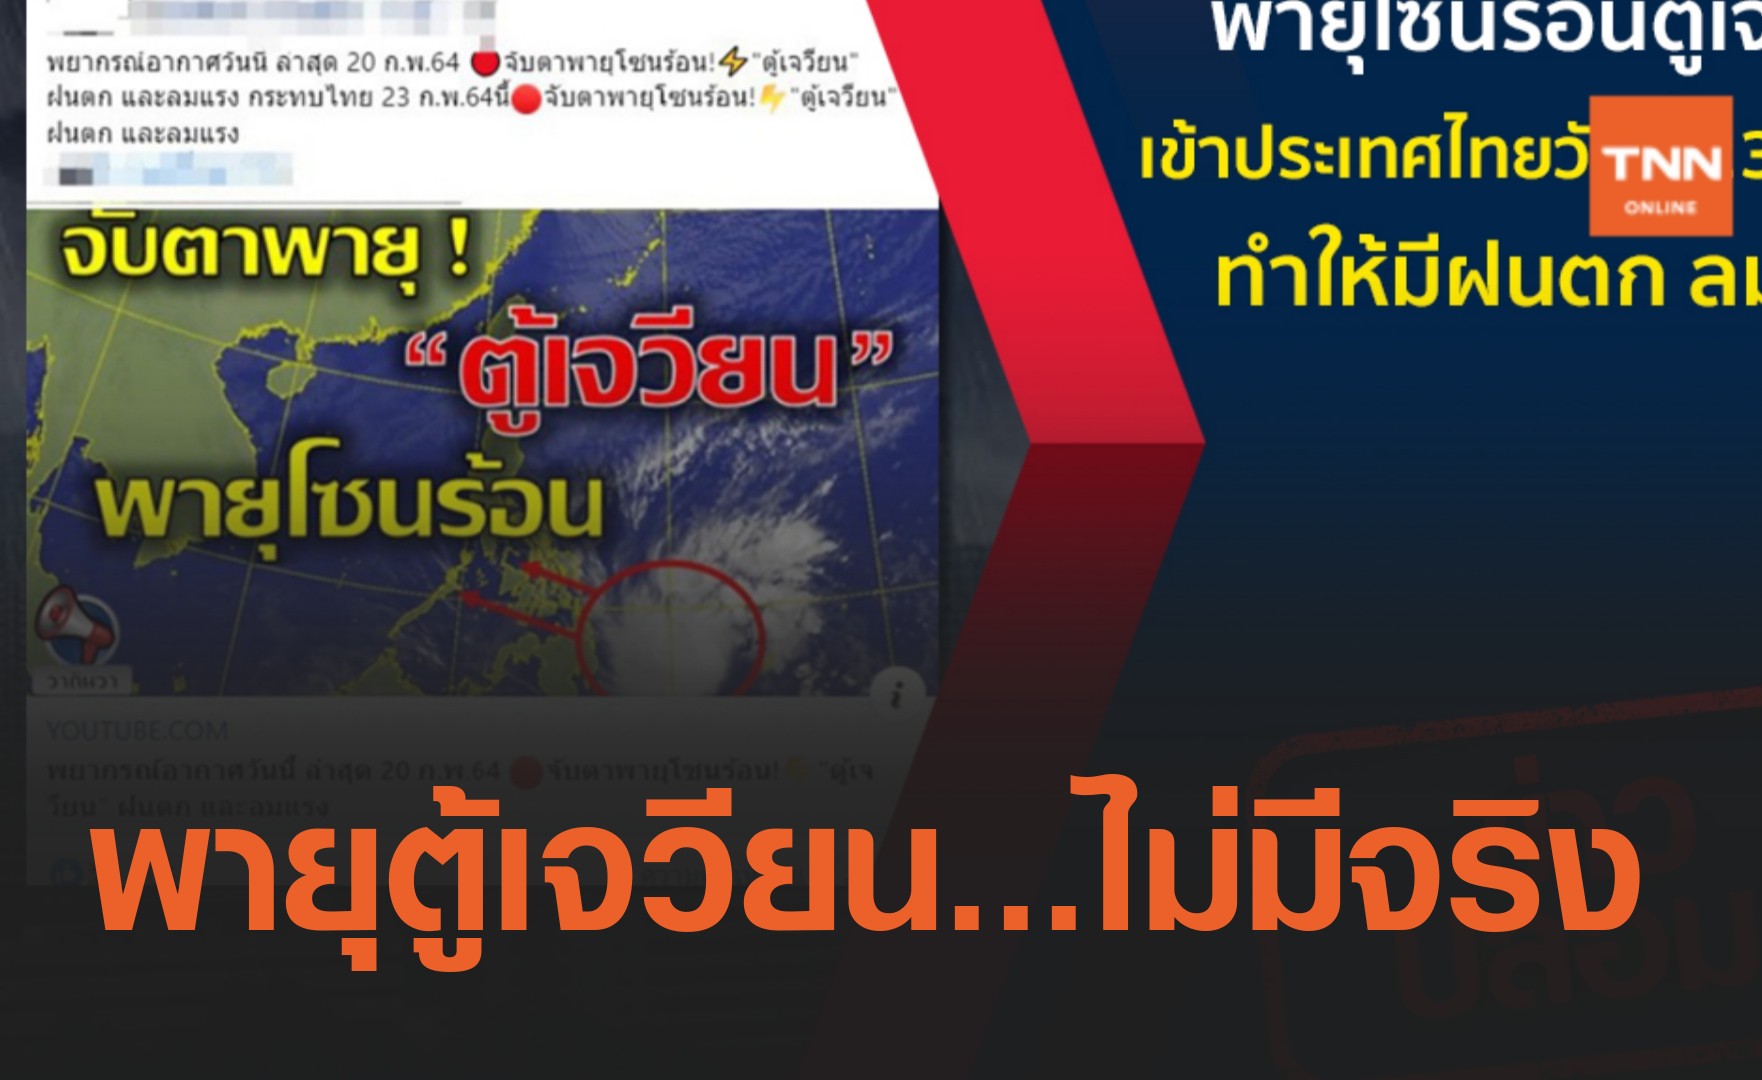 ข่าวปลอม อย่าแชร์! พายุโซนร้อนตู้เจวียน เข้าประเทศไทยวันที่ 23 ก.พ.นี้ 